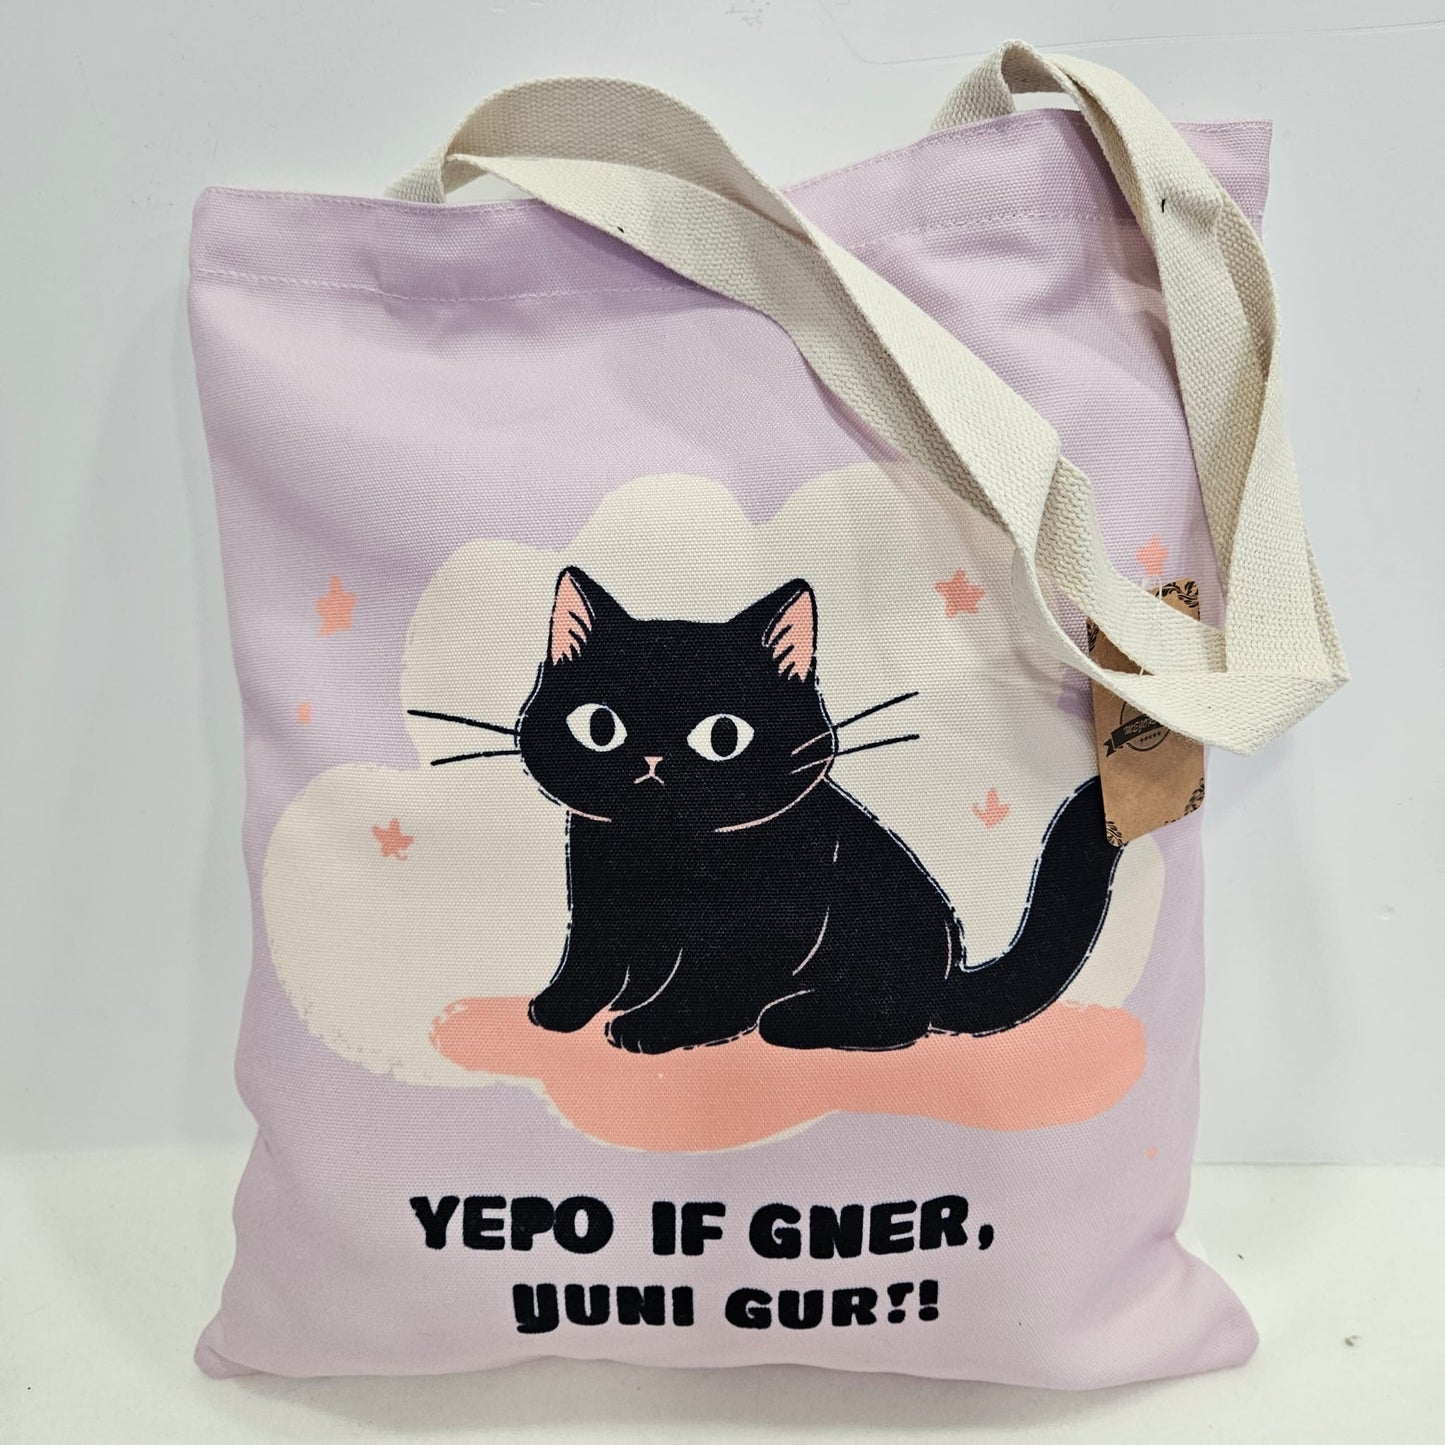 Bolsa tote bag de tela estampado gatito con frase "YEPO IN GNER, YUNI GUR!!"